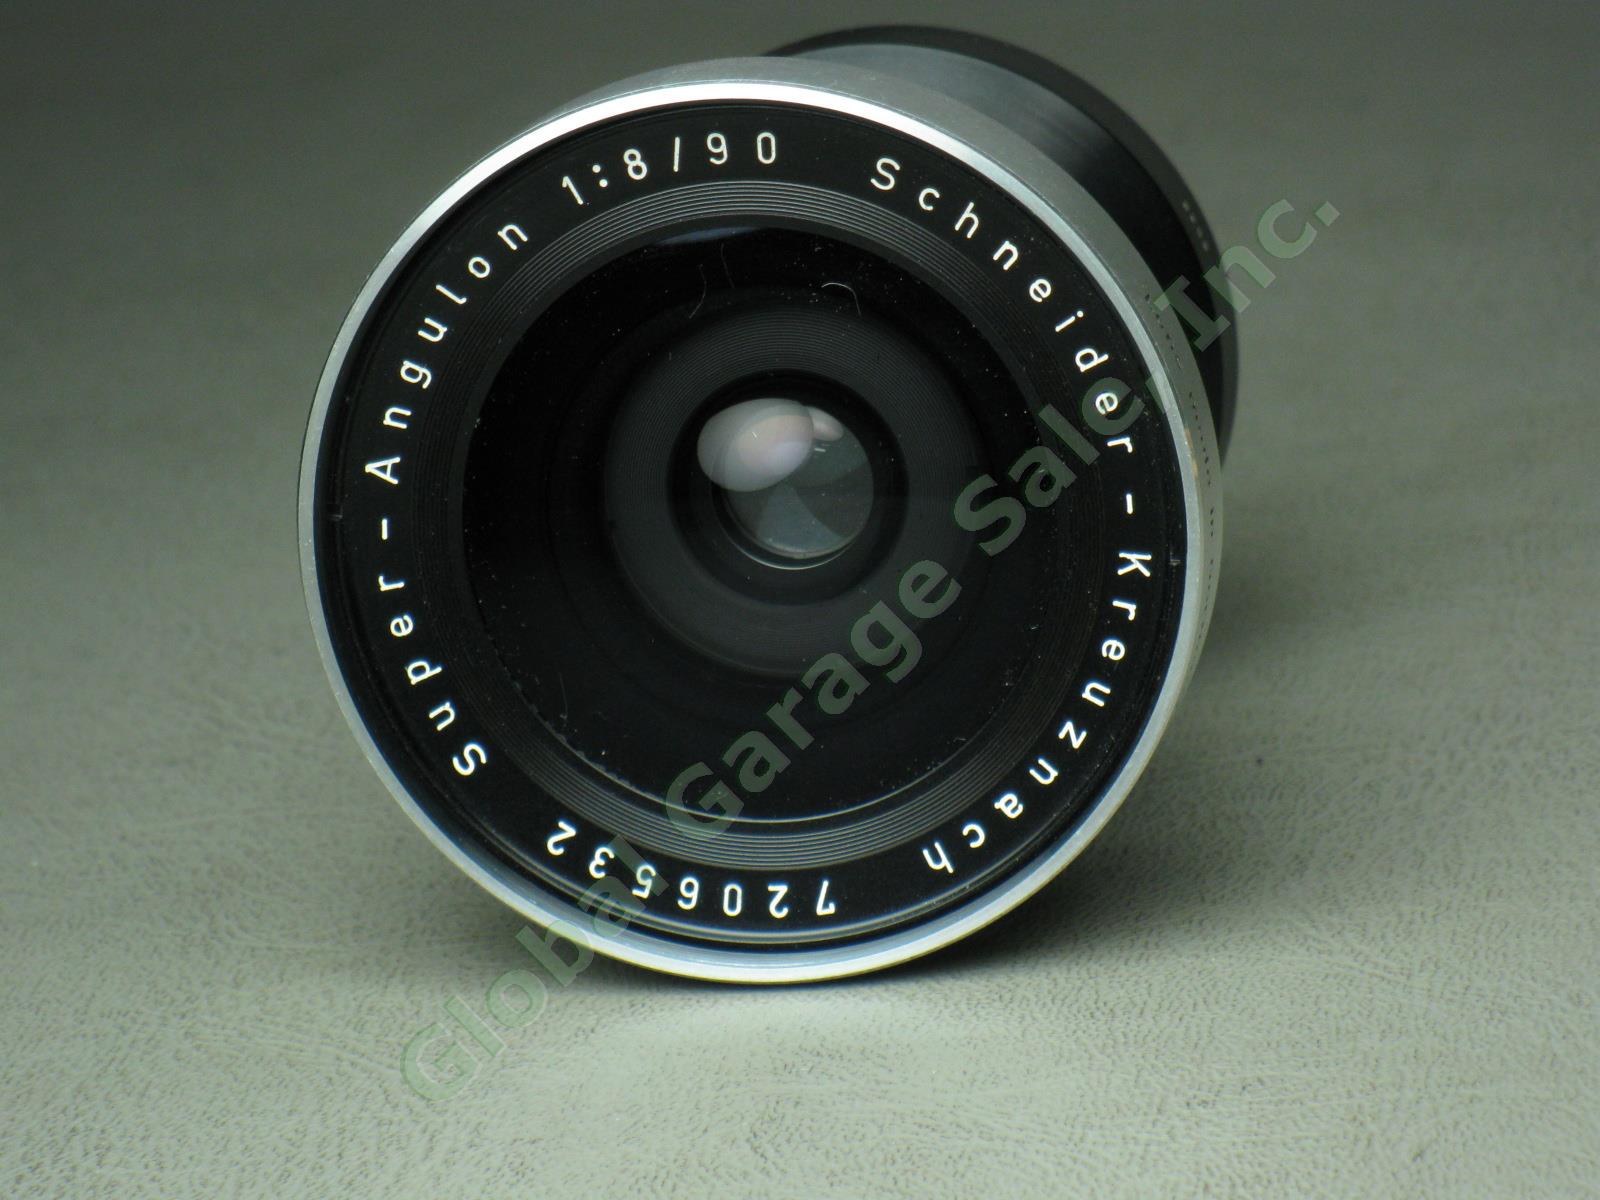 Schneider-Kreuznach Super-Angulon 1:8 f/8 90mm Camera Lens Serial #7206932 NR! 2